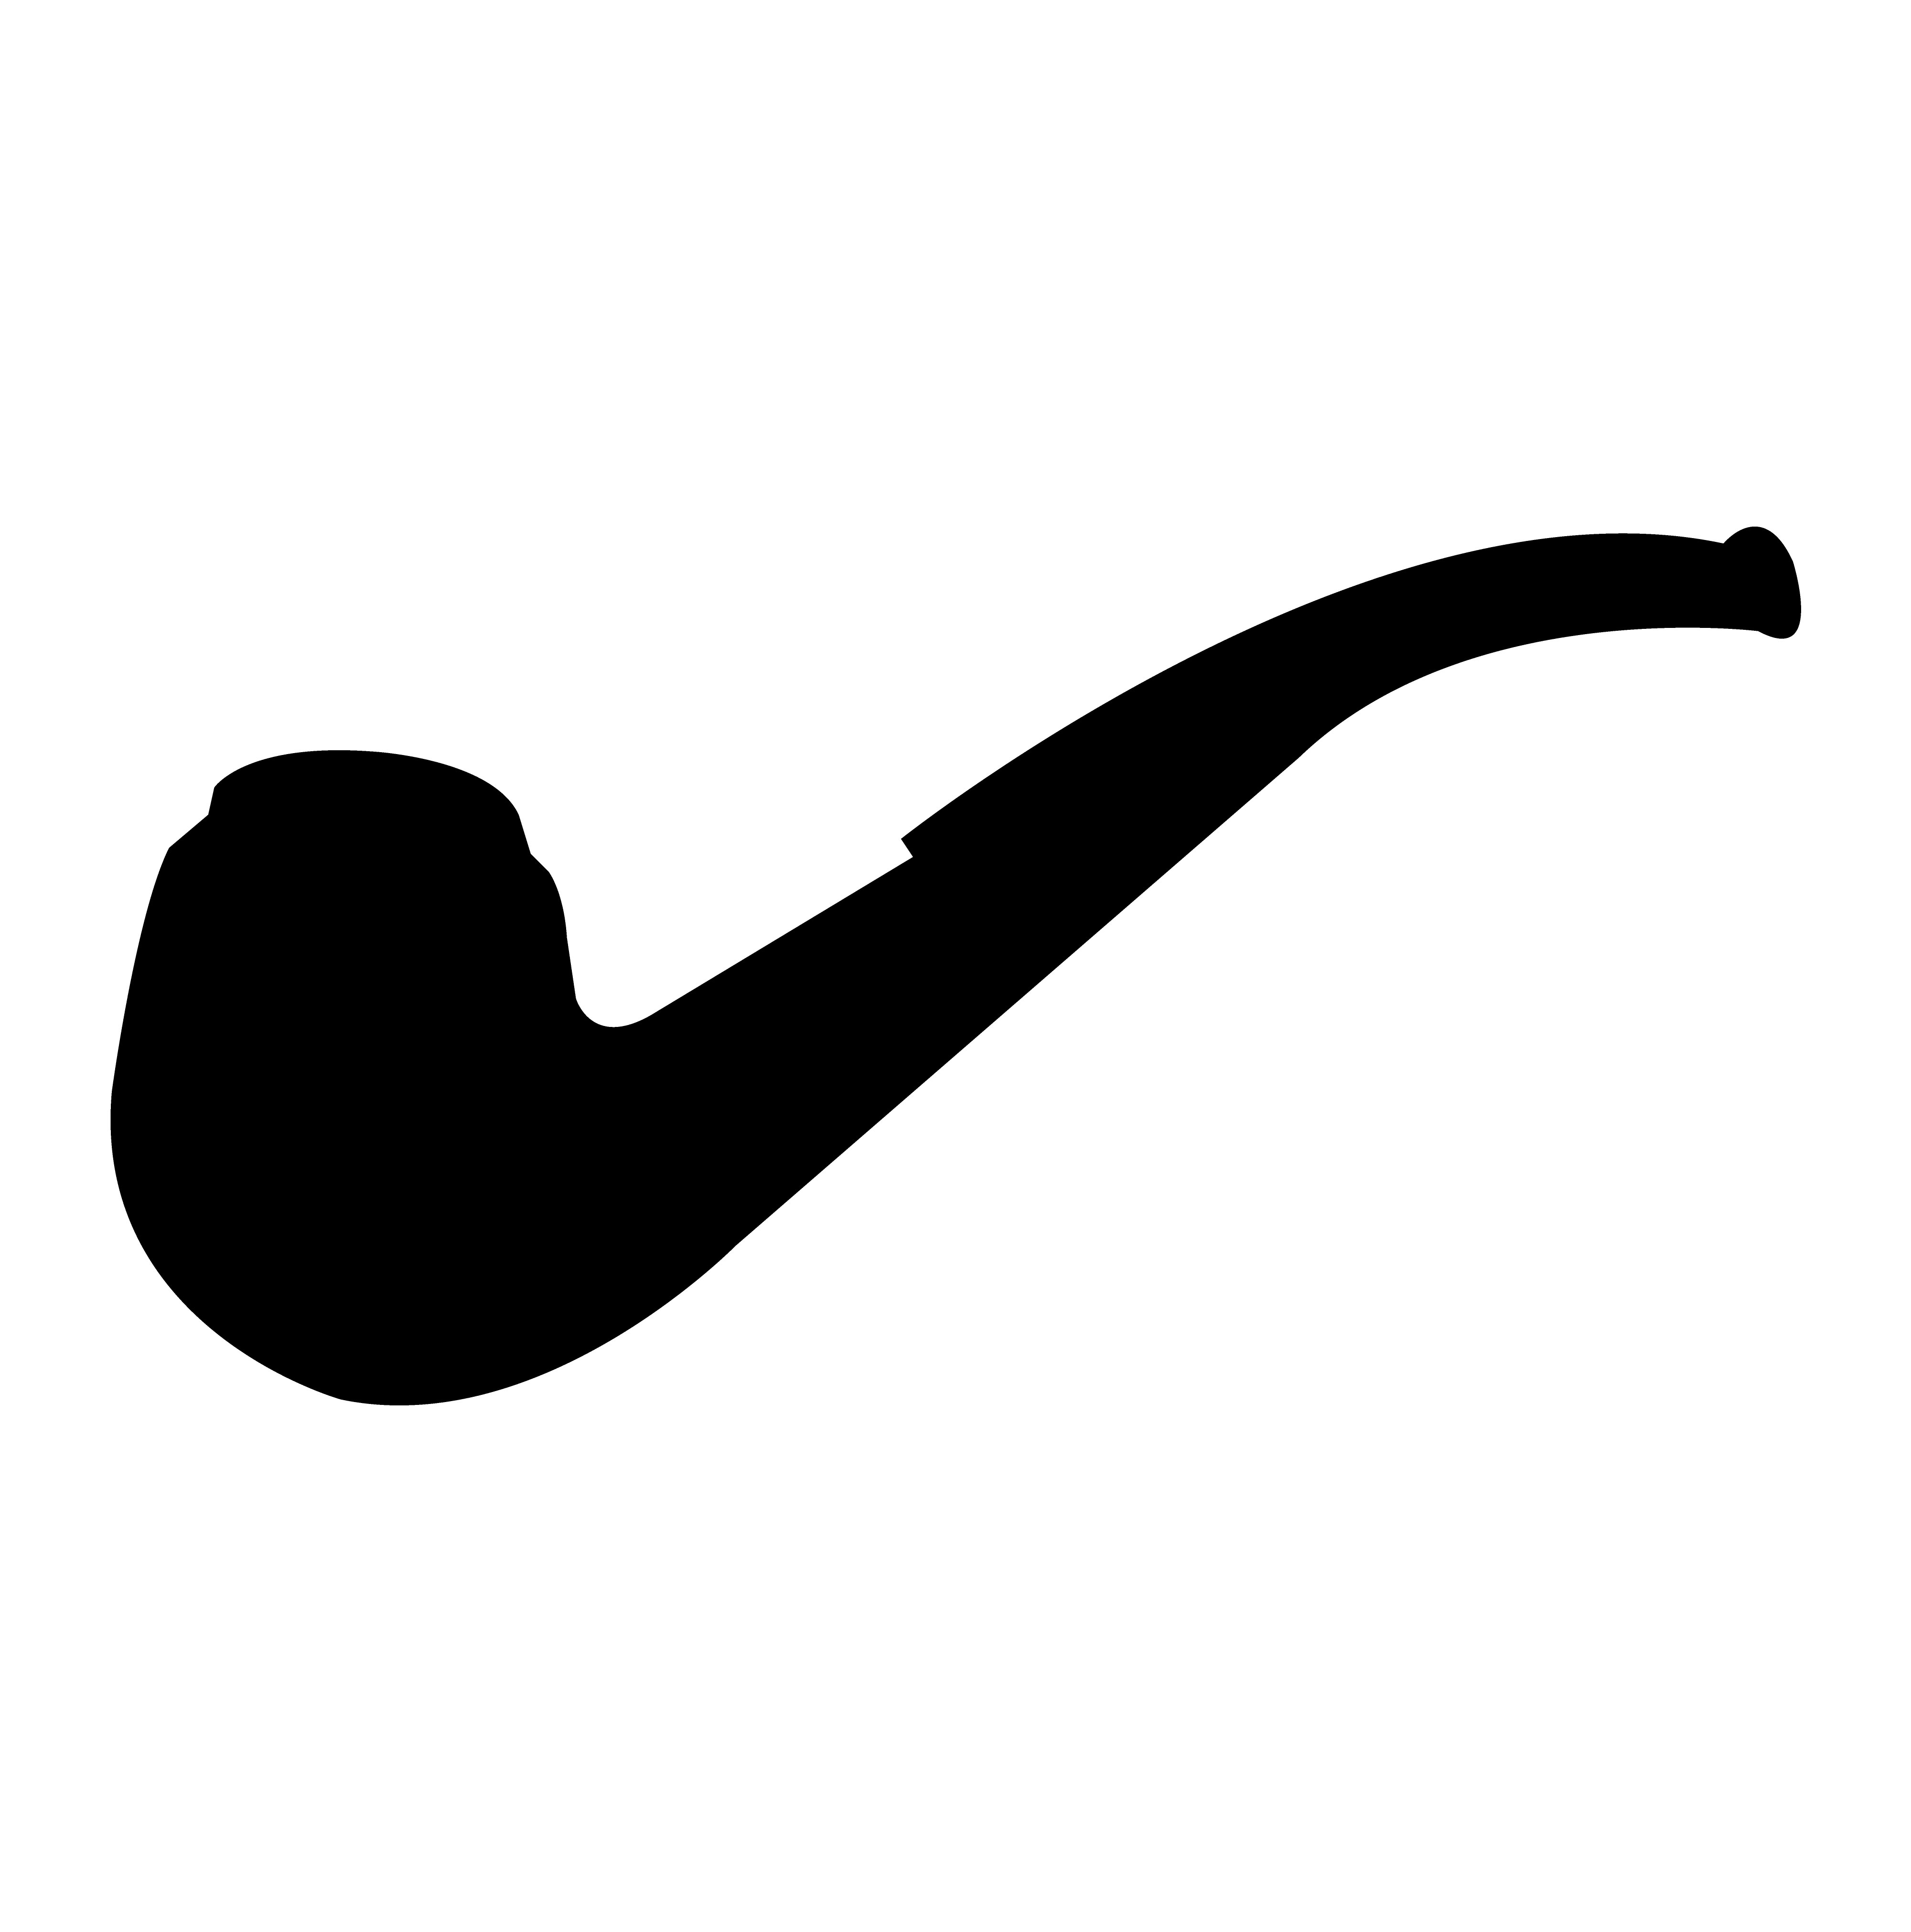 Pipa de fumar silueta negra 639899 Vector en Vecteezy